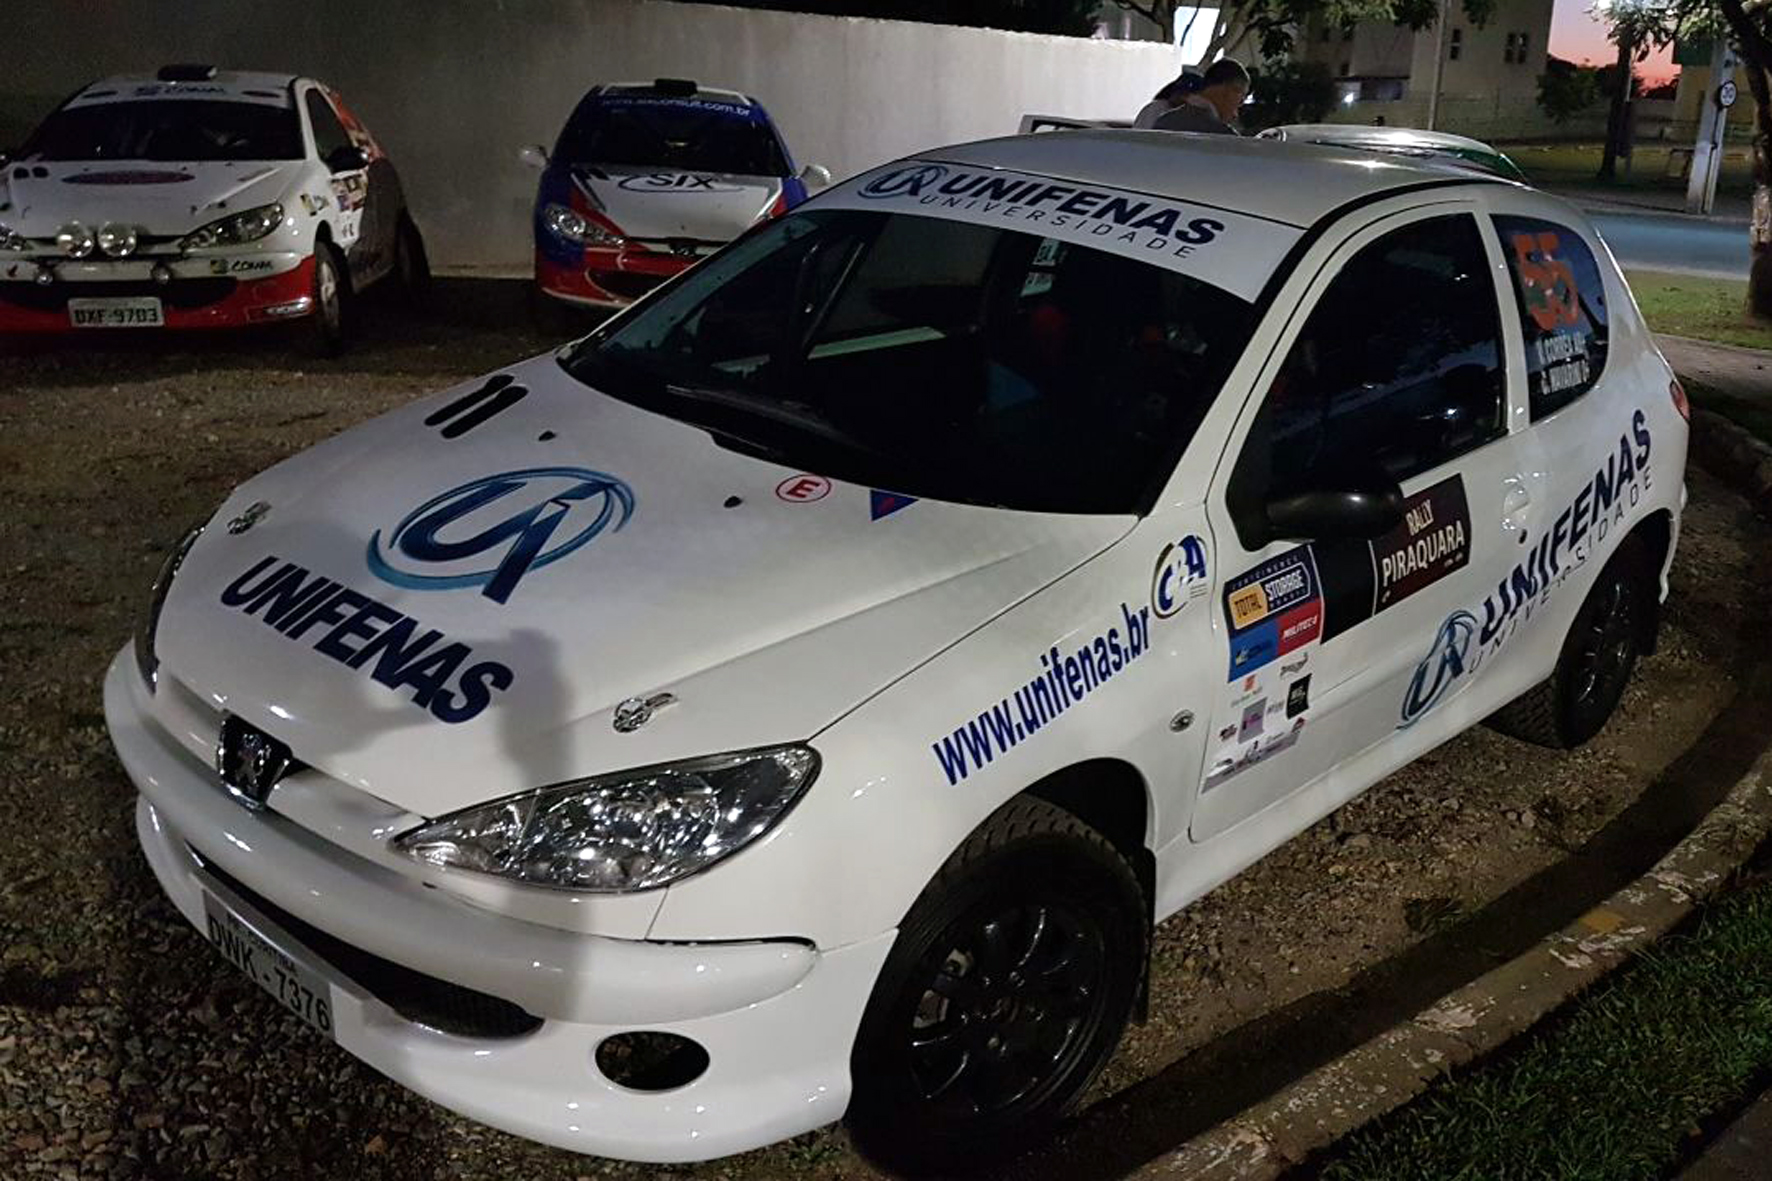 Campeão de Rali, o mineiro Victor Corrêa testará carro antigo